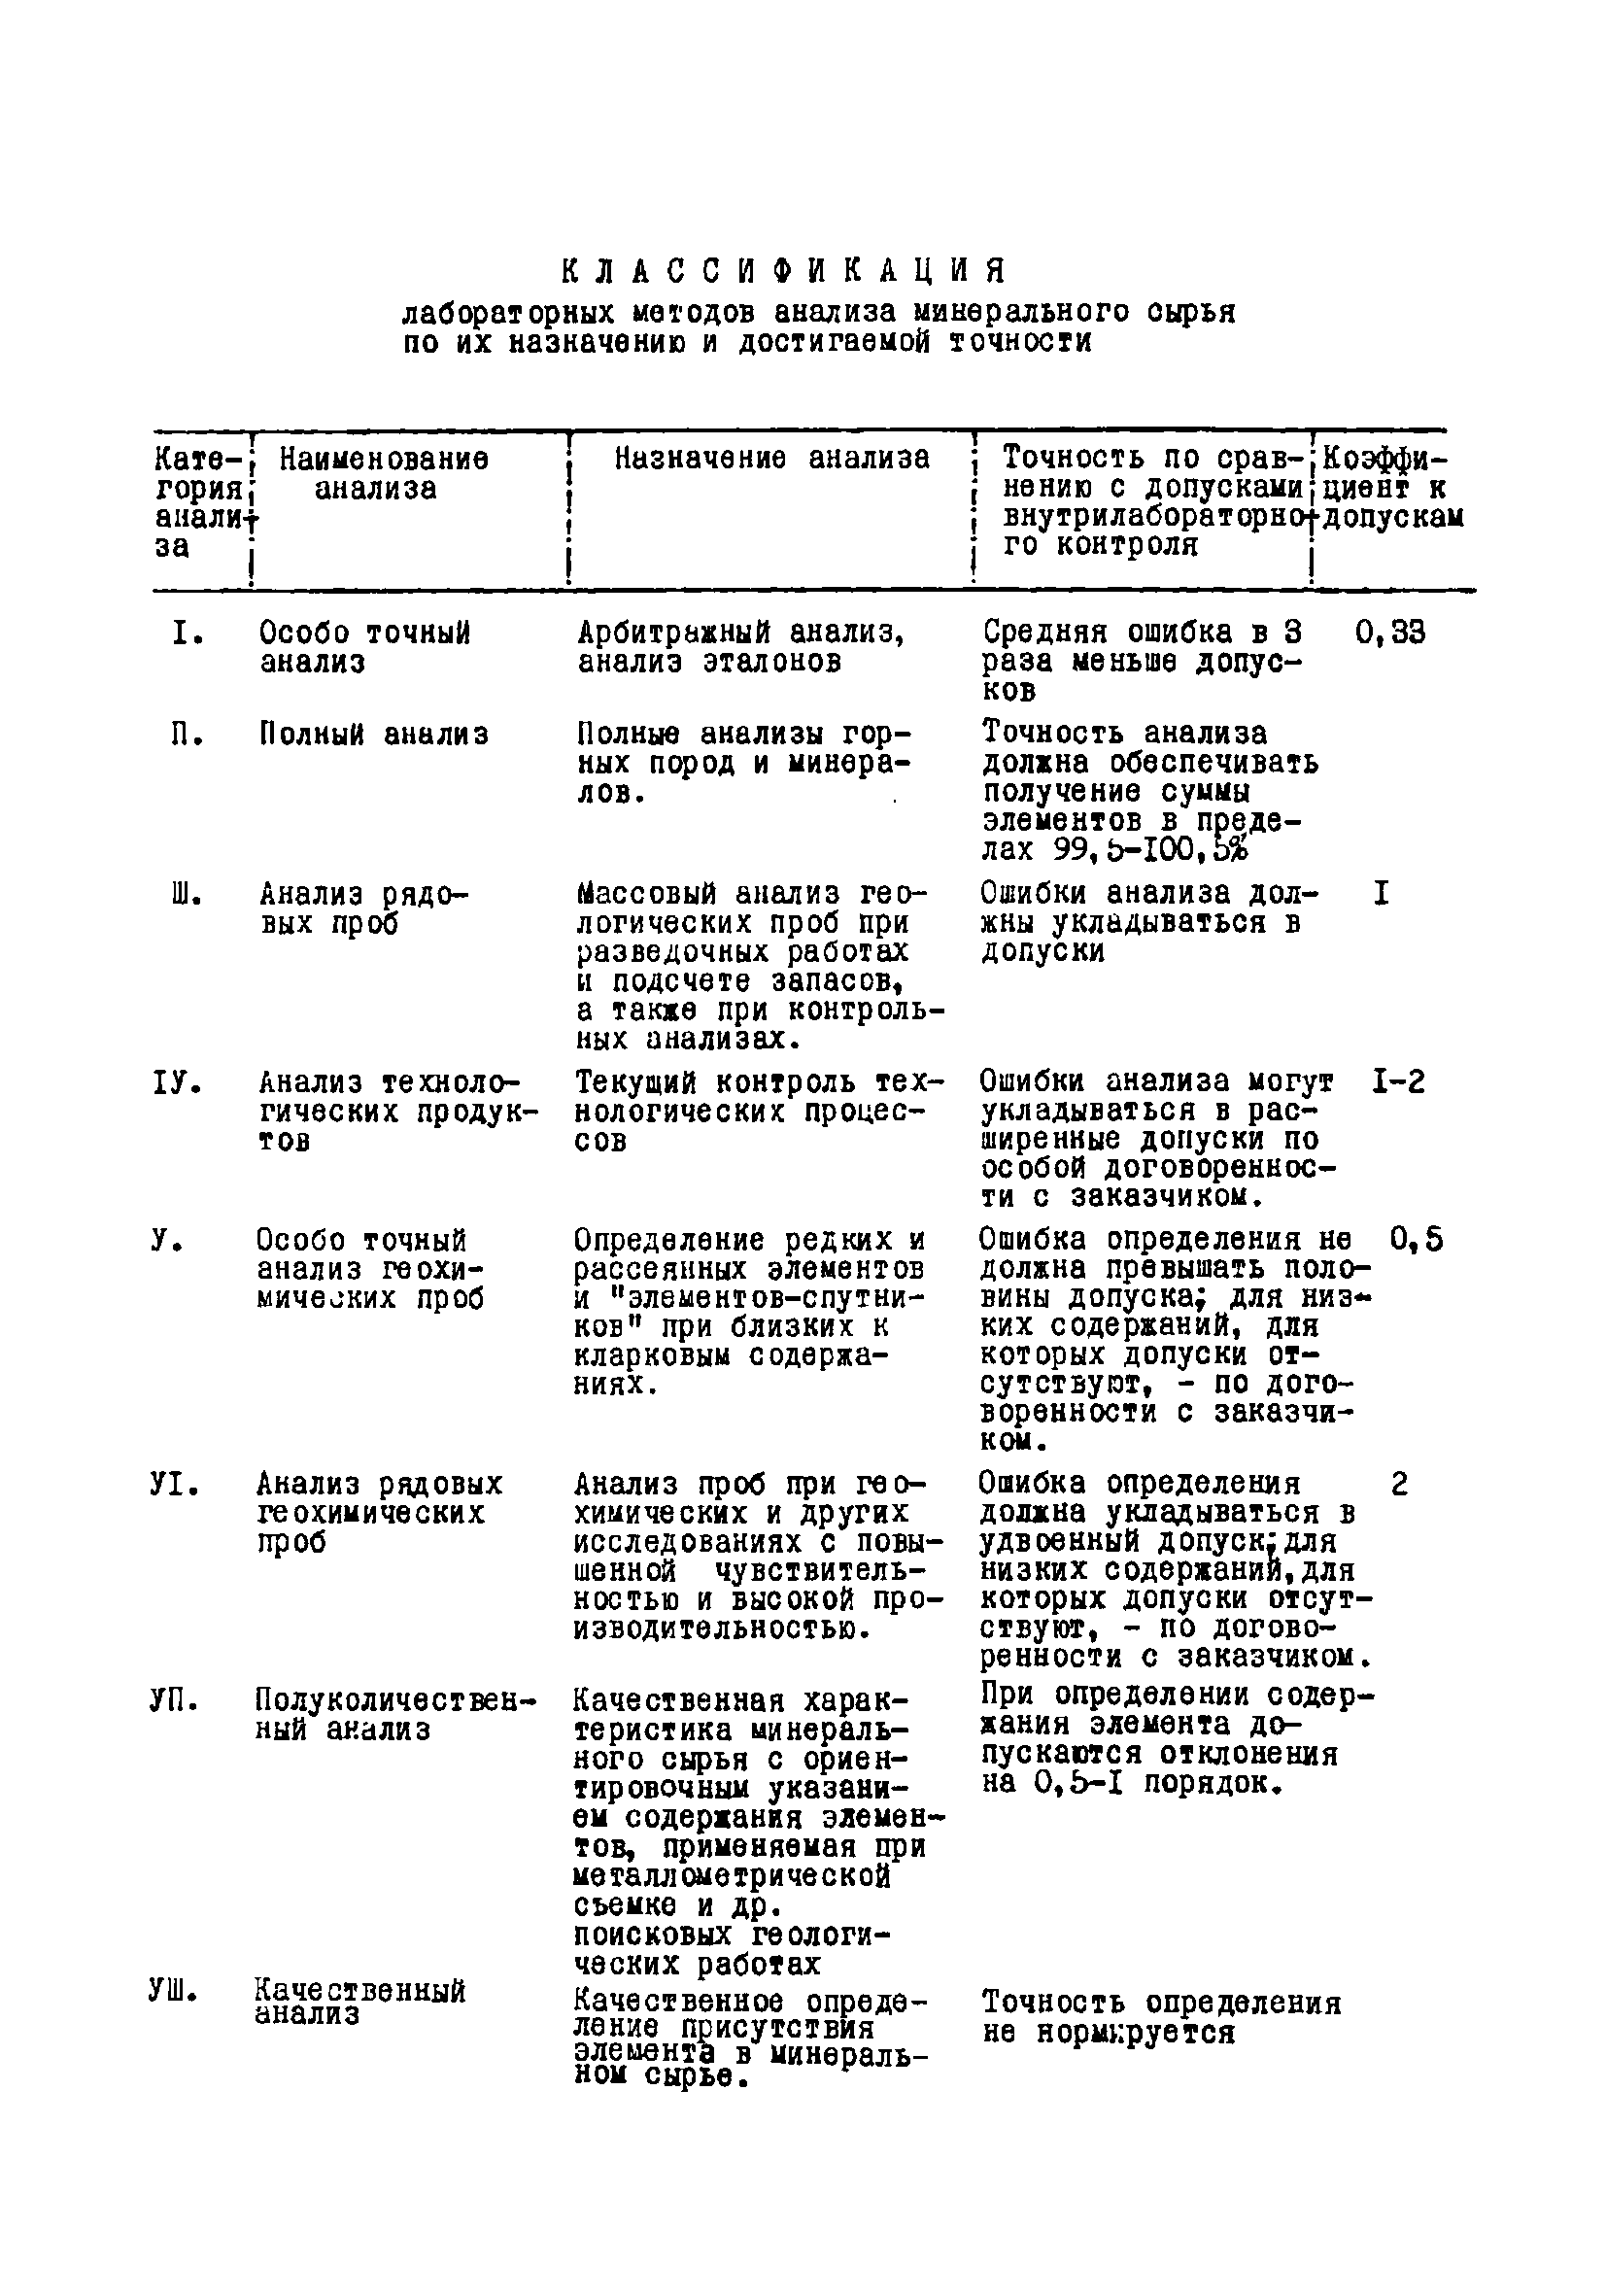 Инструкция НСАМ 76-С